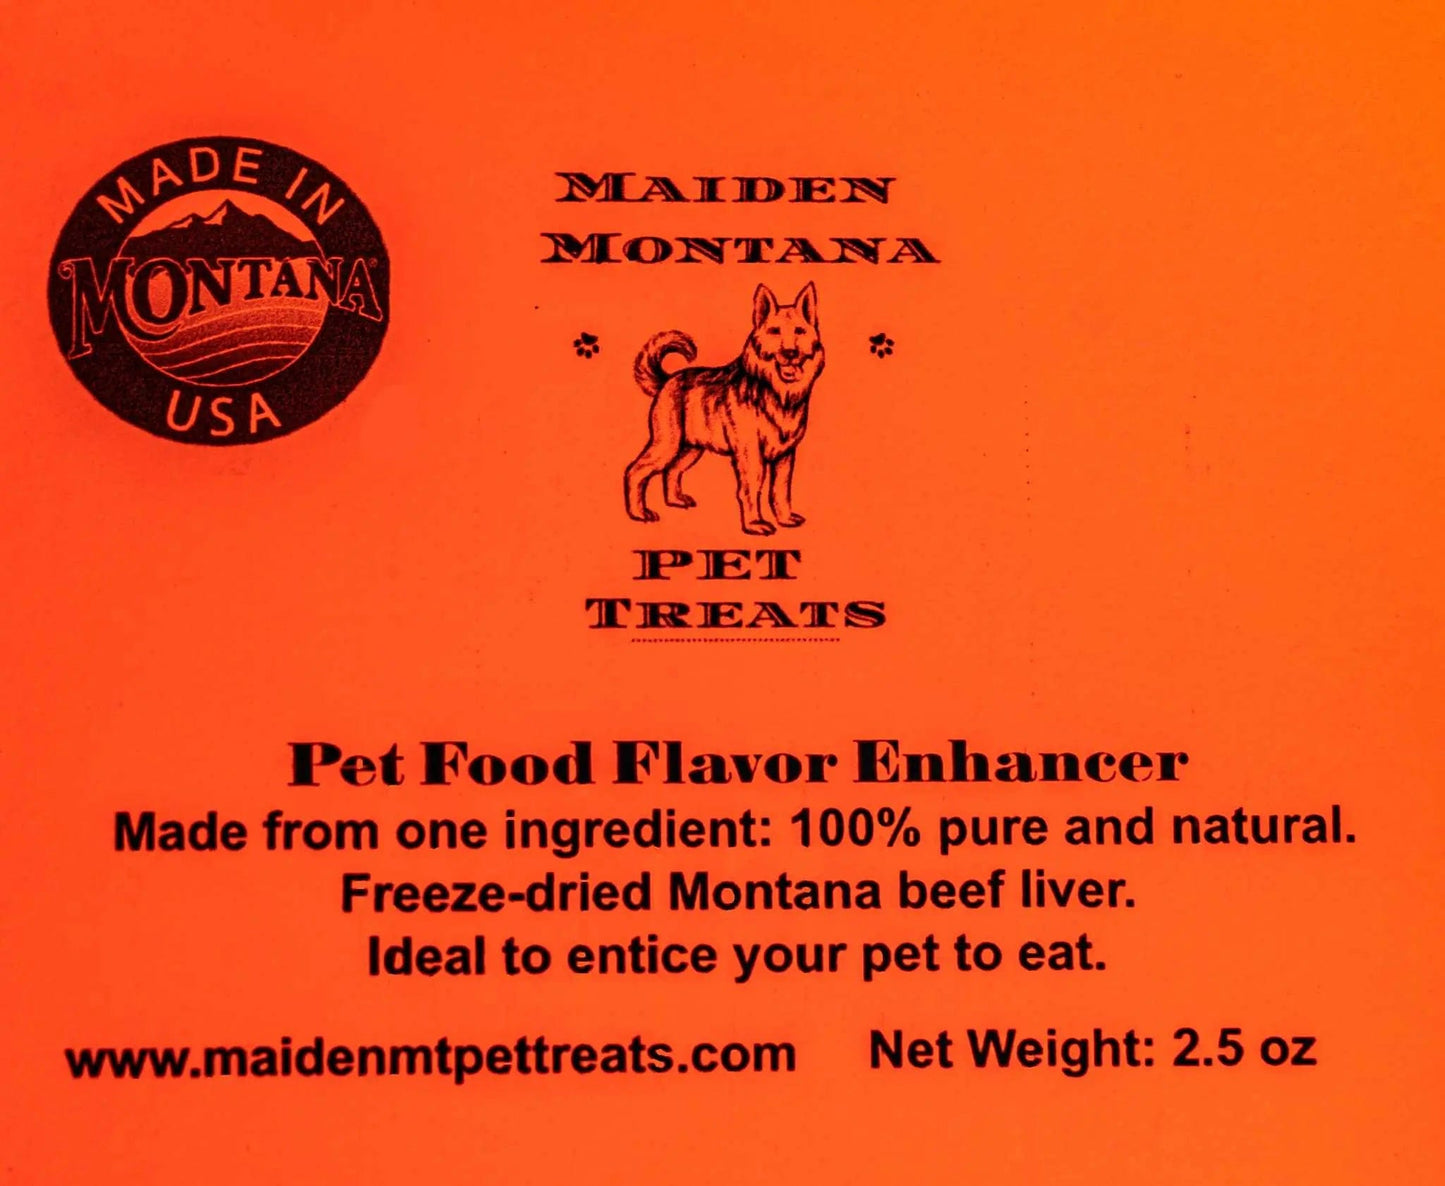 Best Pet Food Toppers! Maiden Montana Pet Food Flavor Enhancer Maiden Montana Pet Treats